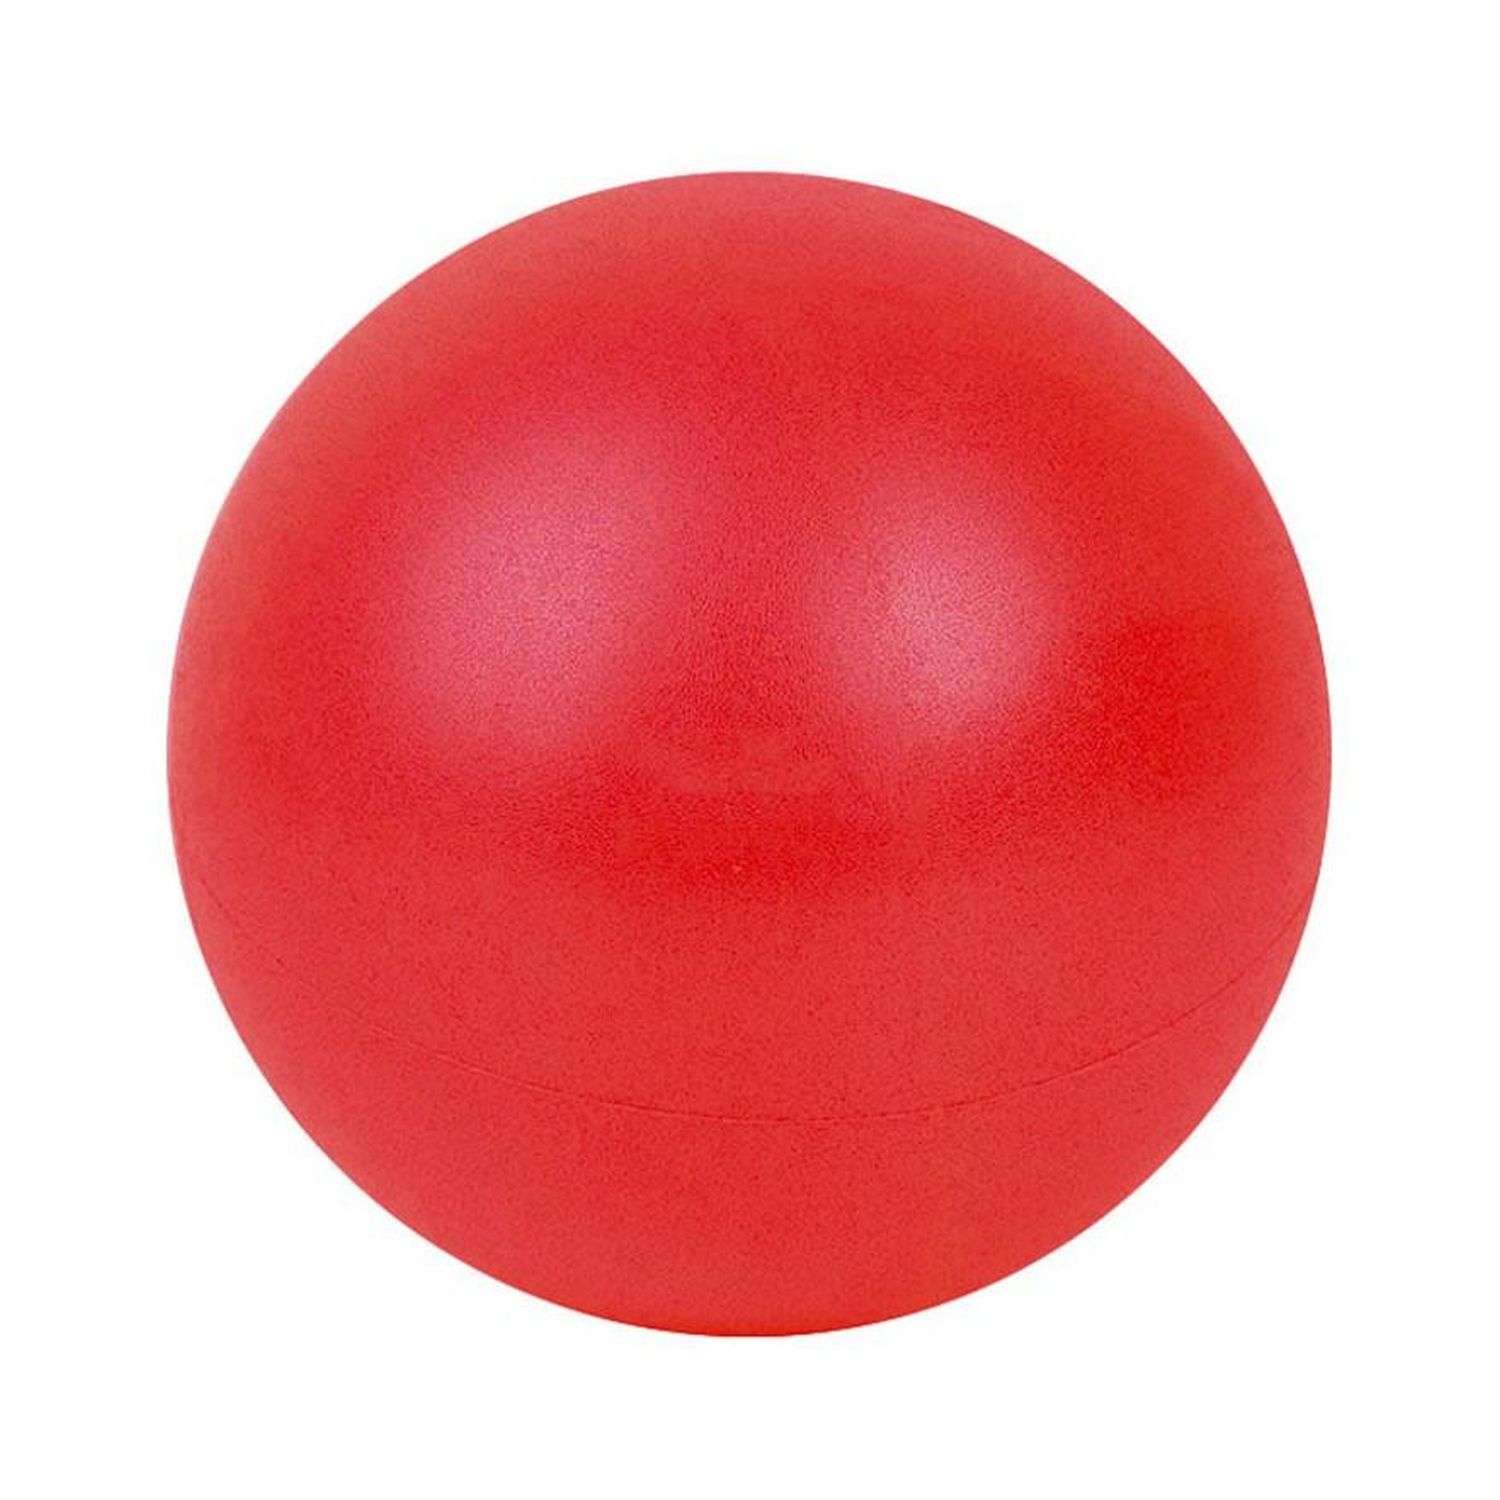 Мяч для йоги и пилатеса Beroma с антивзрывным эффектом 20 см красный - фото 1